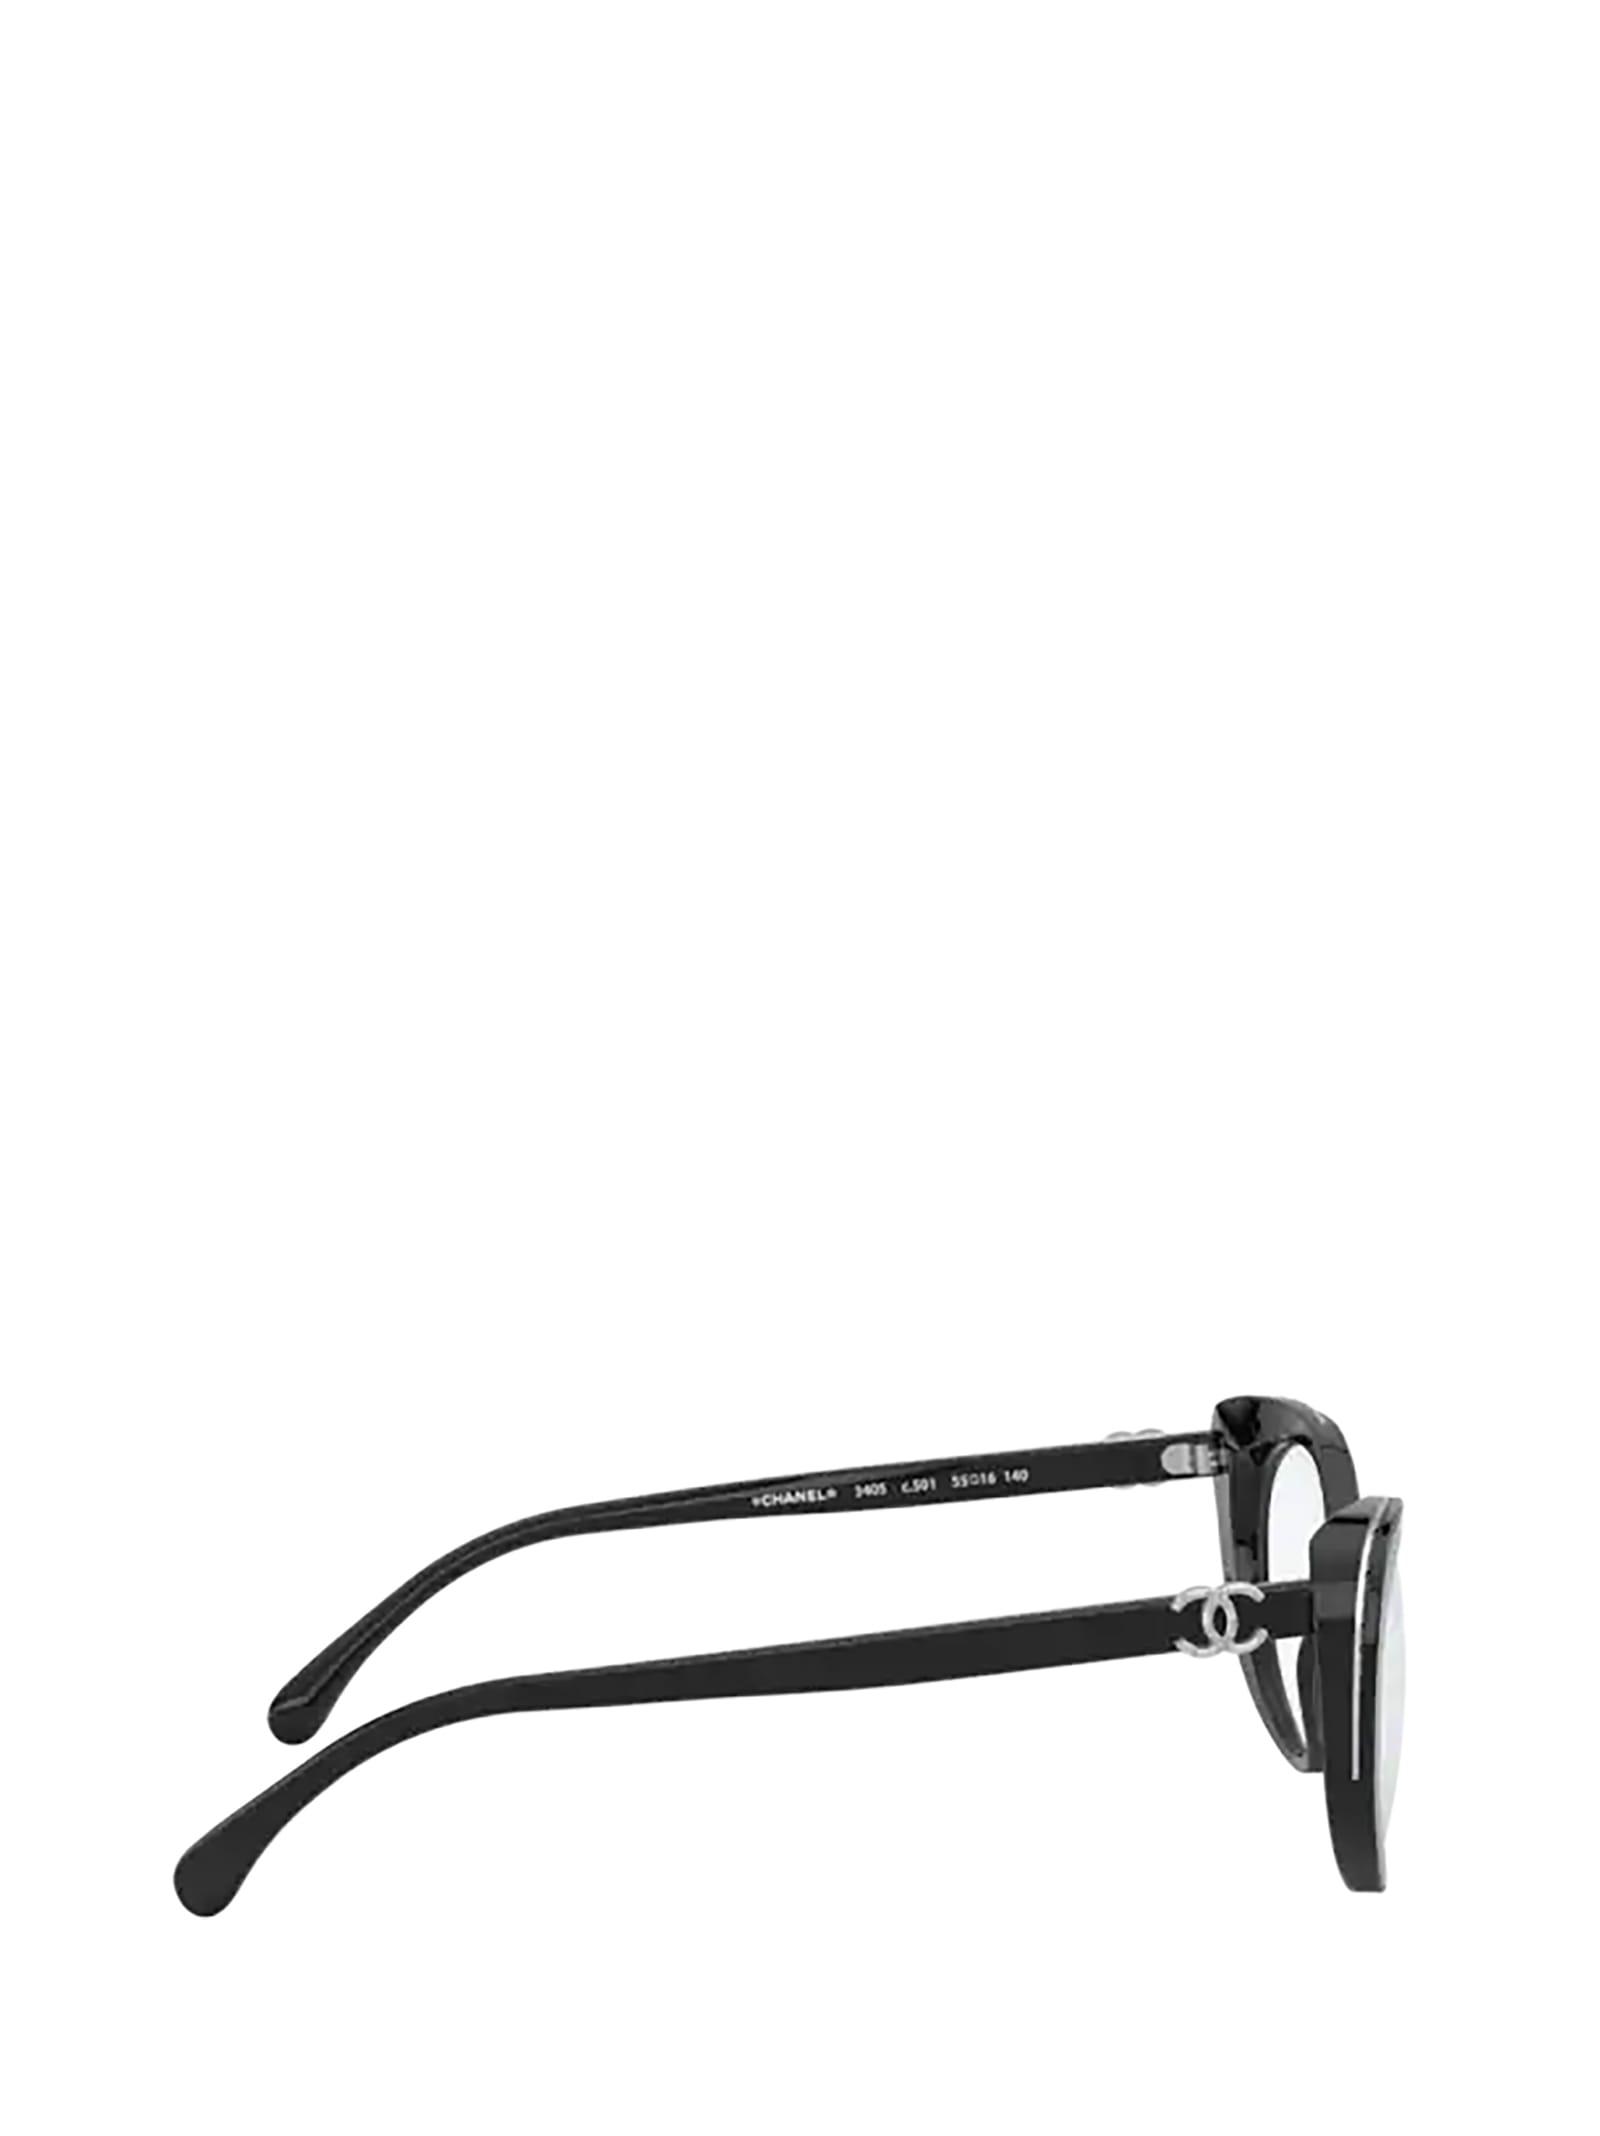 Sunglasses: Square Sunglasses, acetate — Fashion